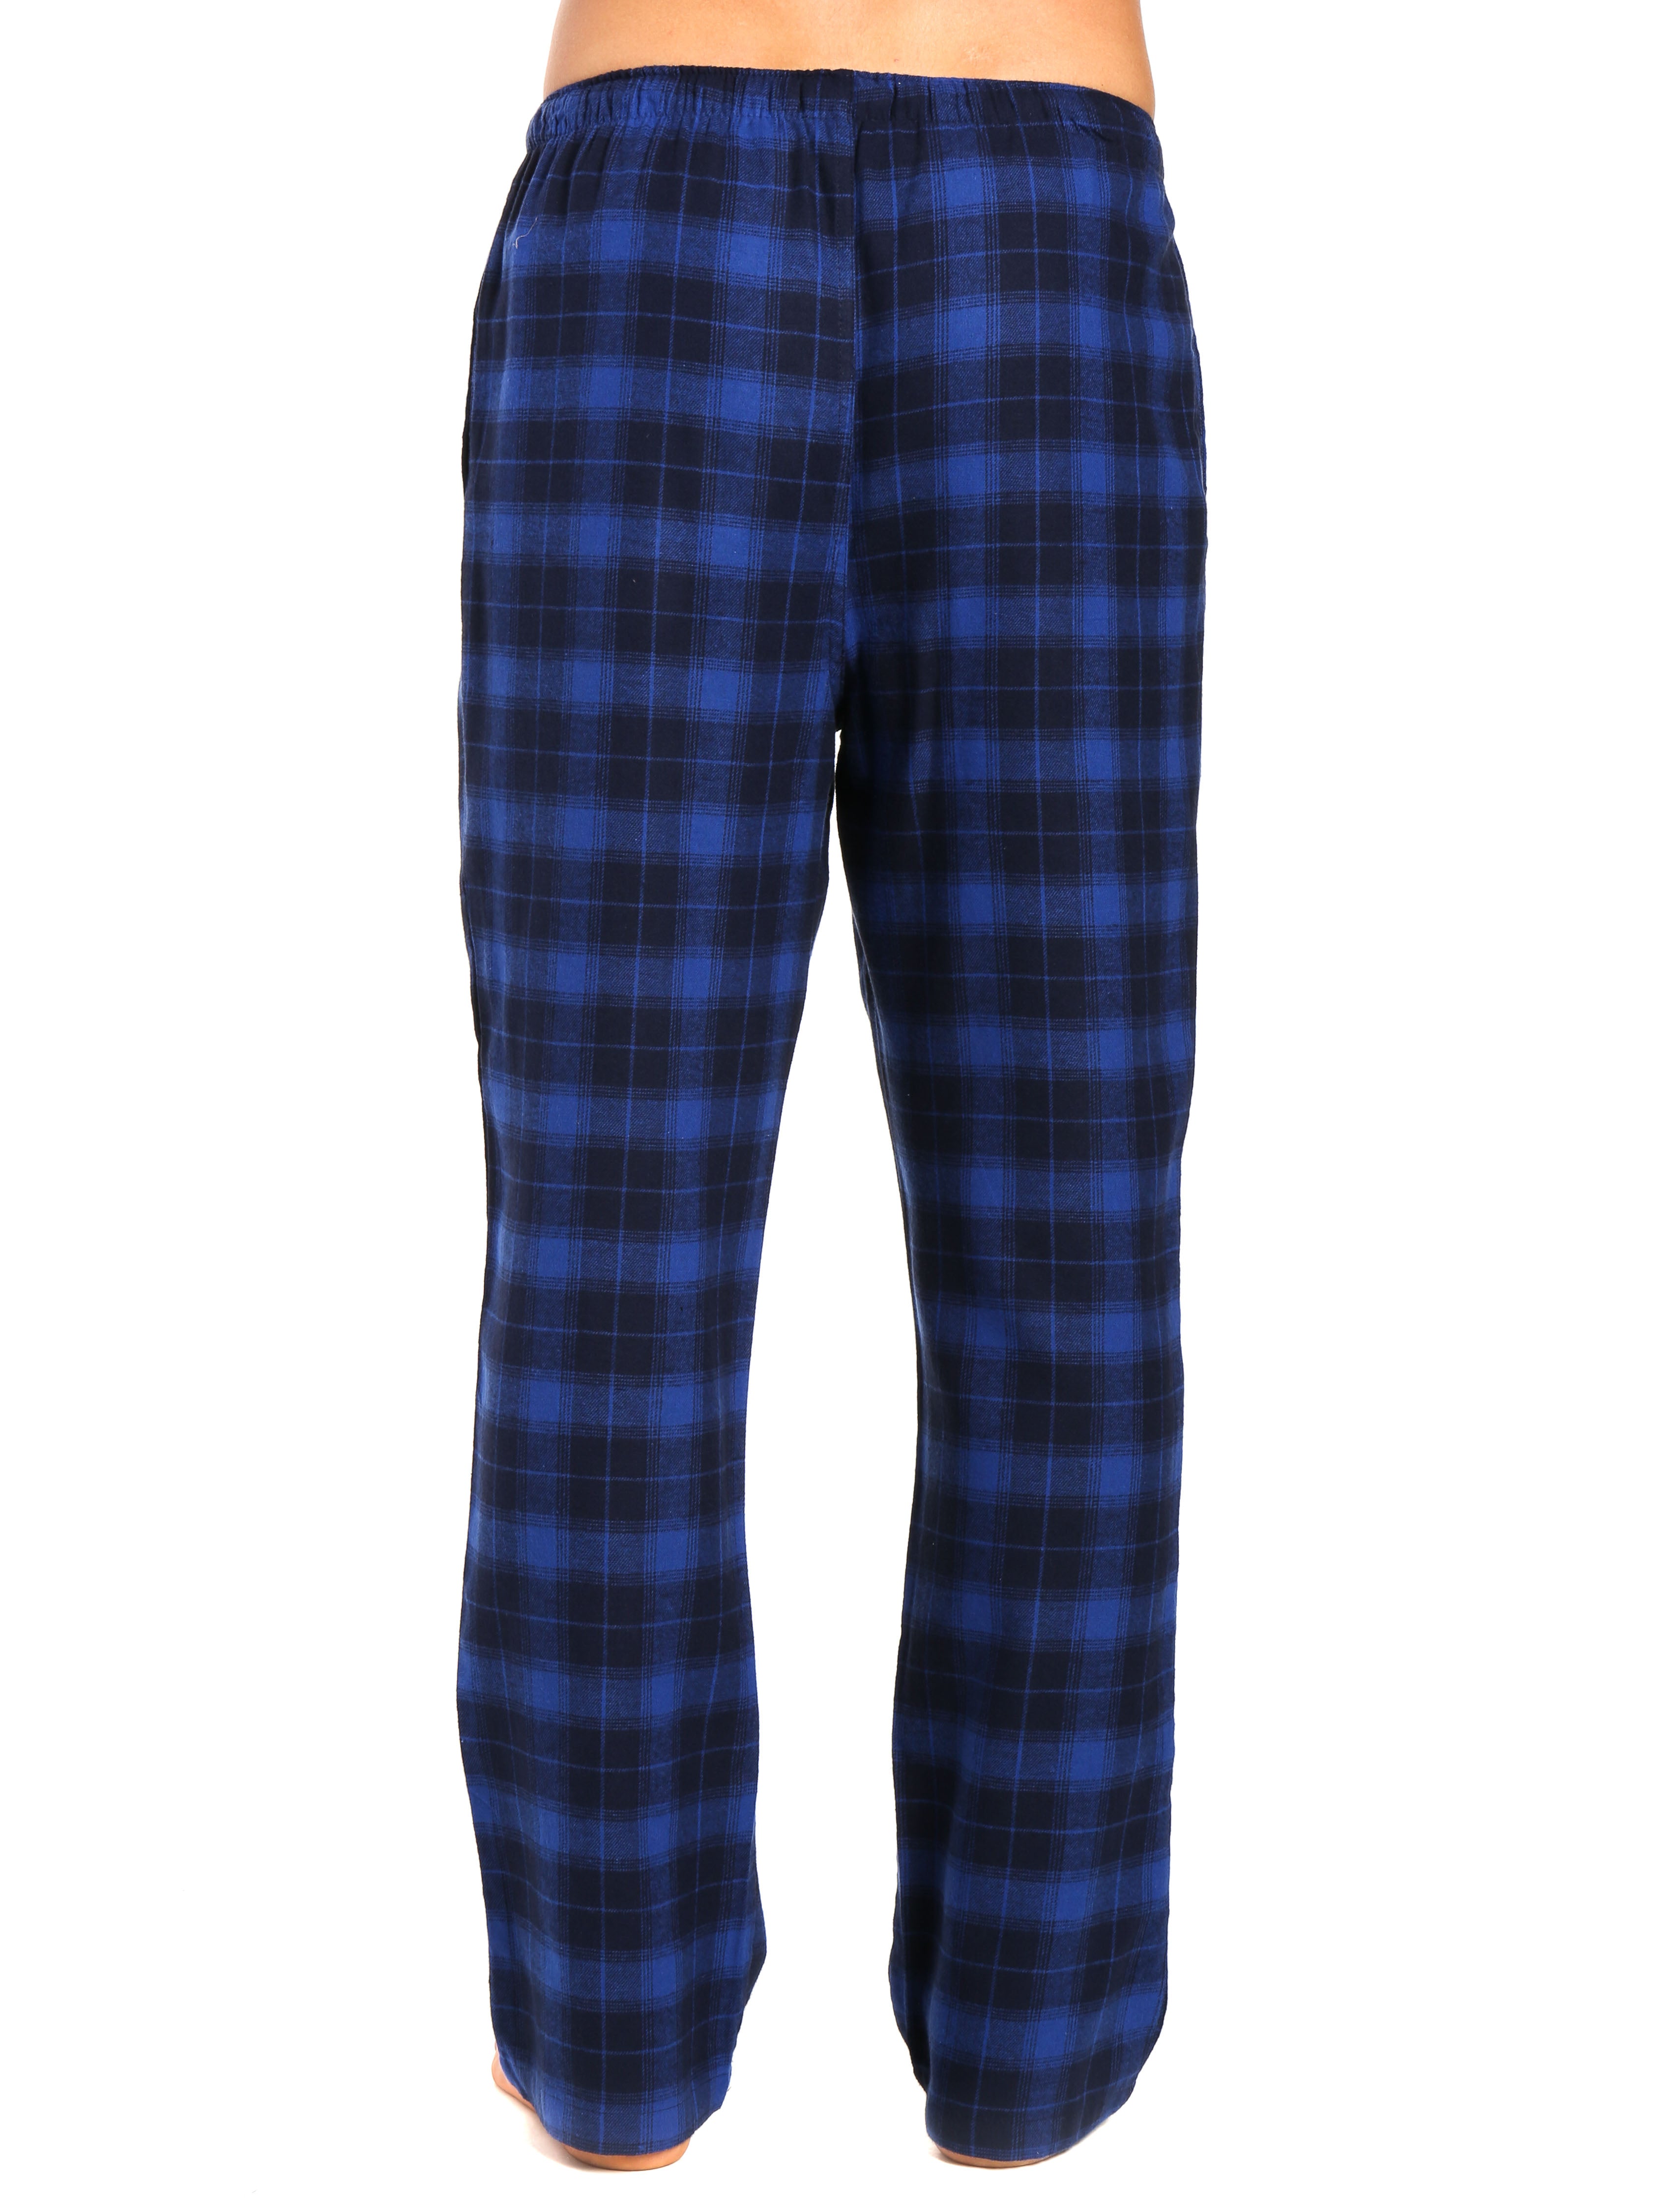 Men's 100% Cotton Flannel Lounge Pants - Plaid Blue-Navy – FlannelPeople